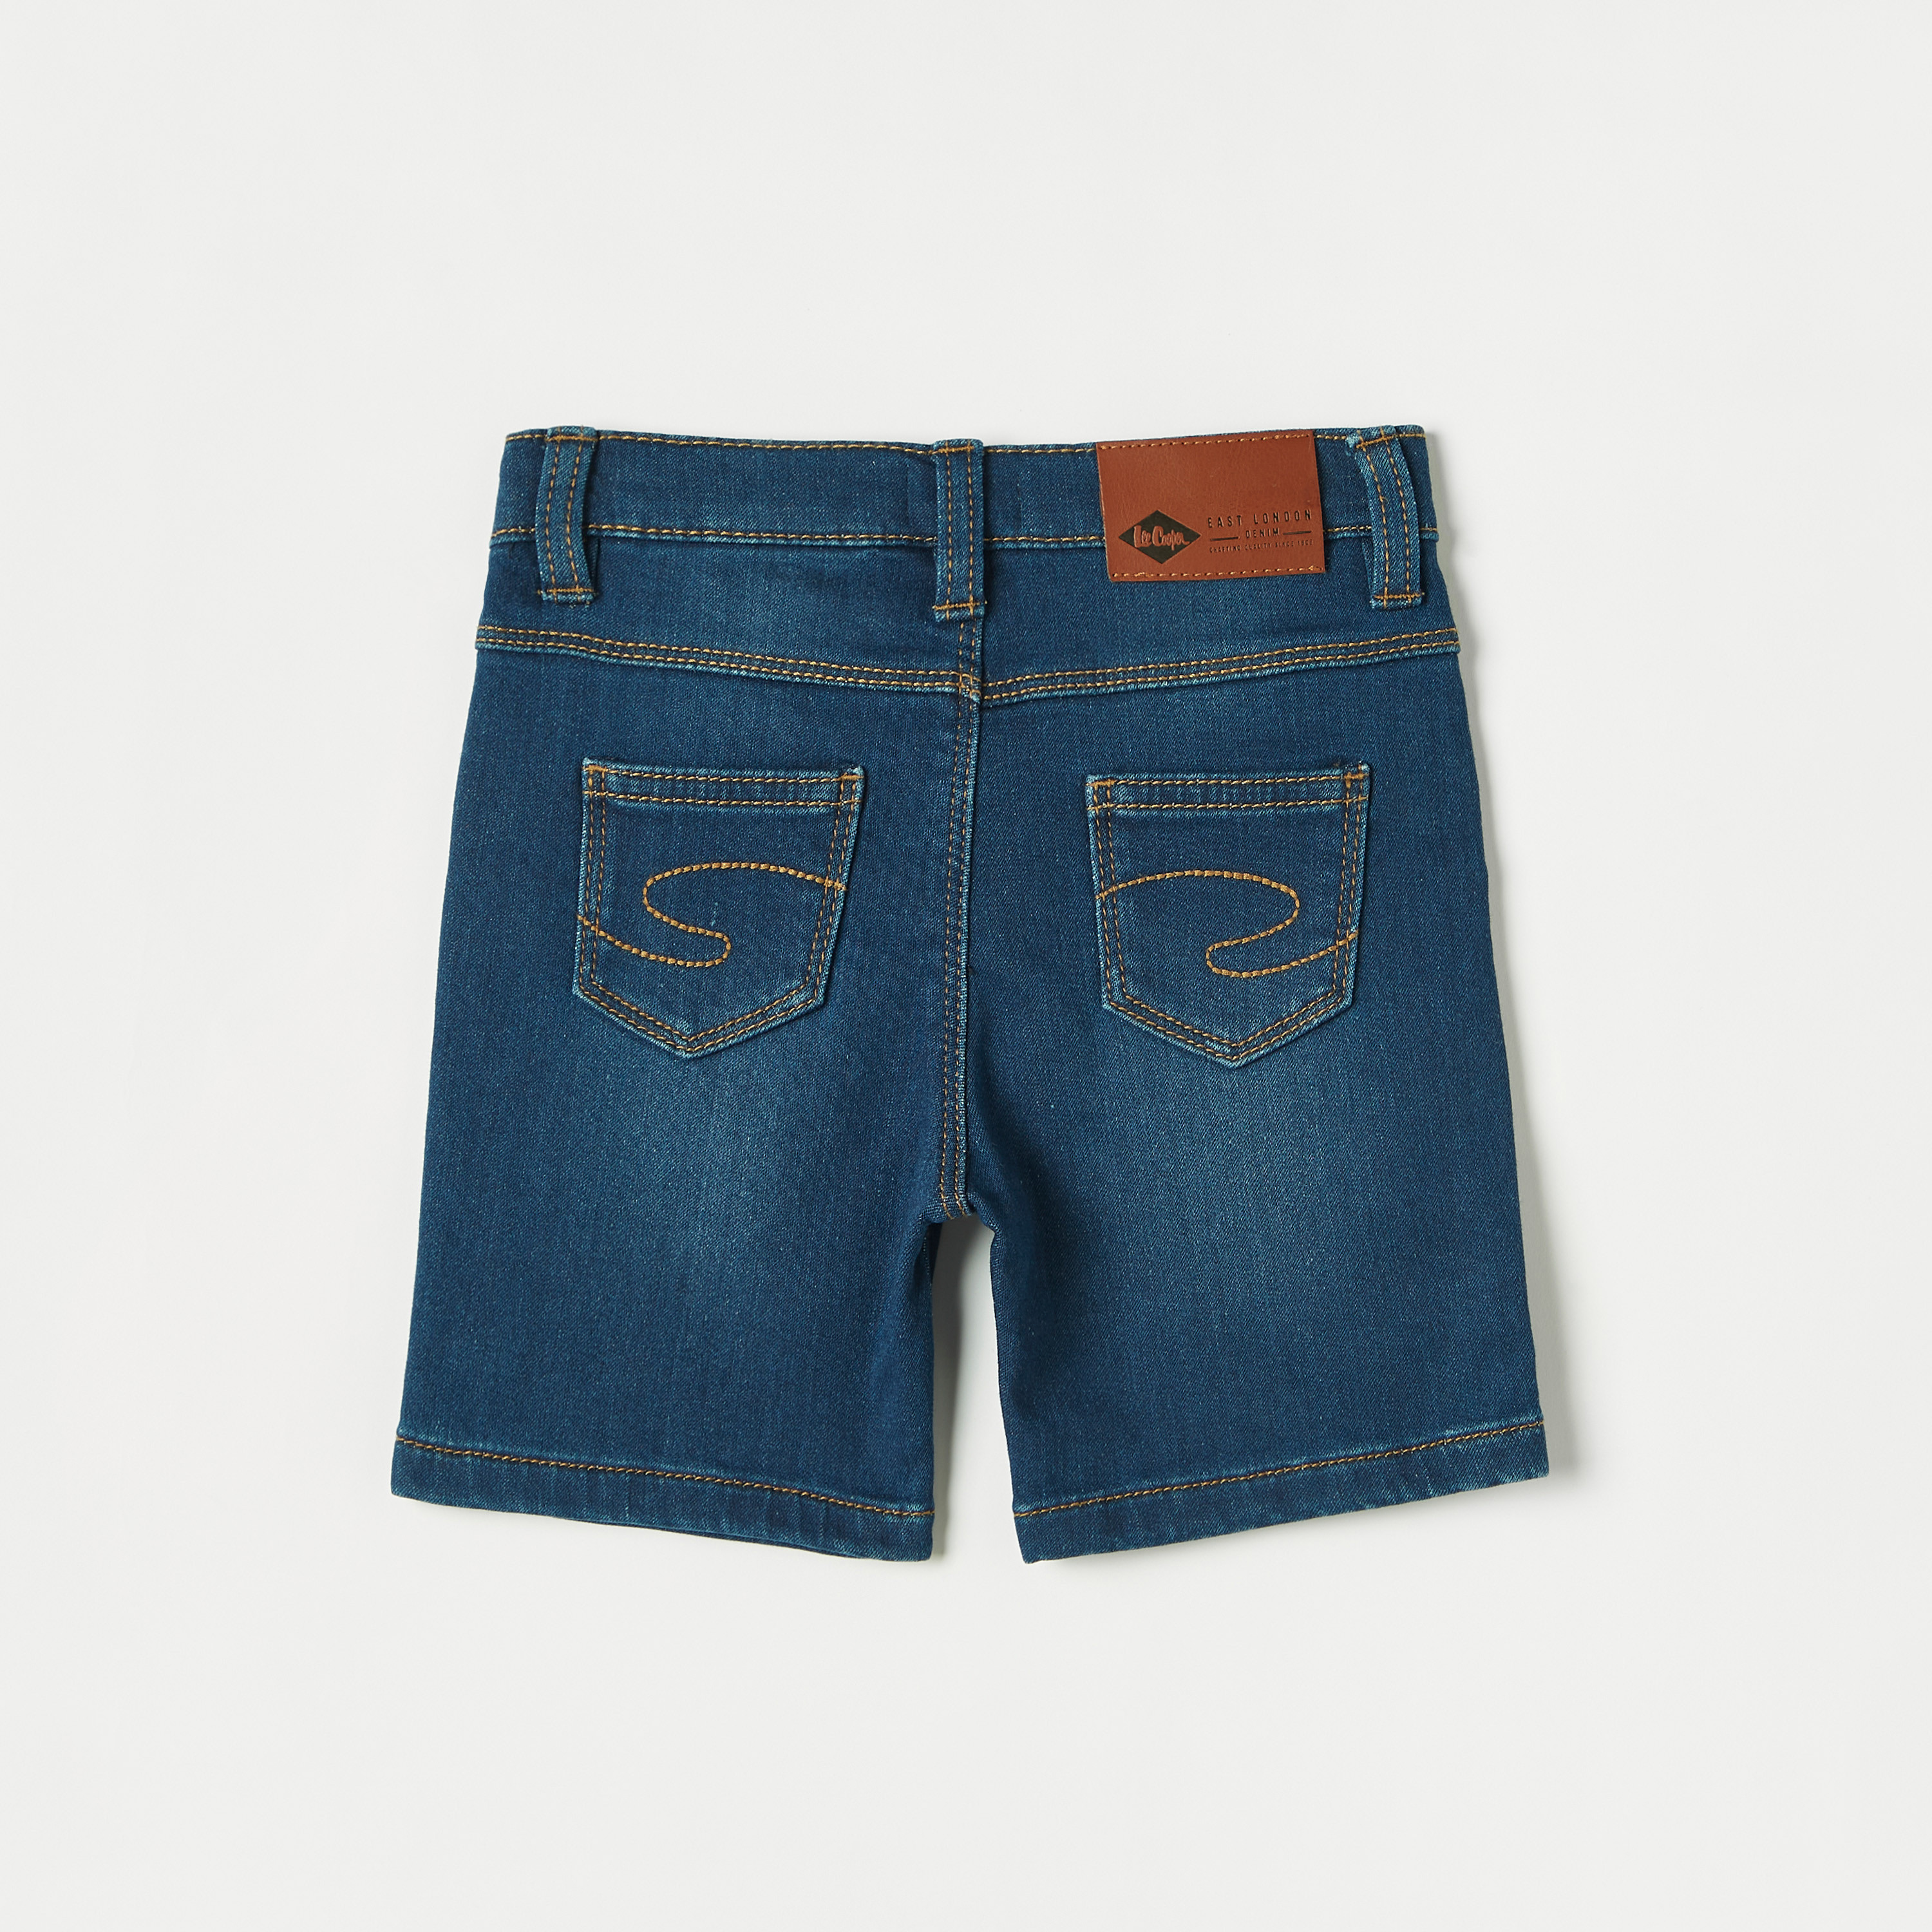 Buy Lee Cooper Denim Shorts with Pocket Detail and Belt Loops | Splash KSA